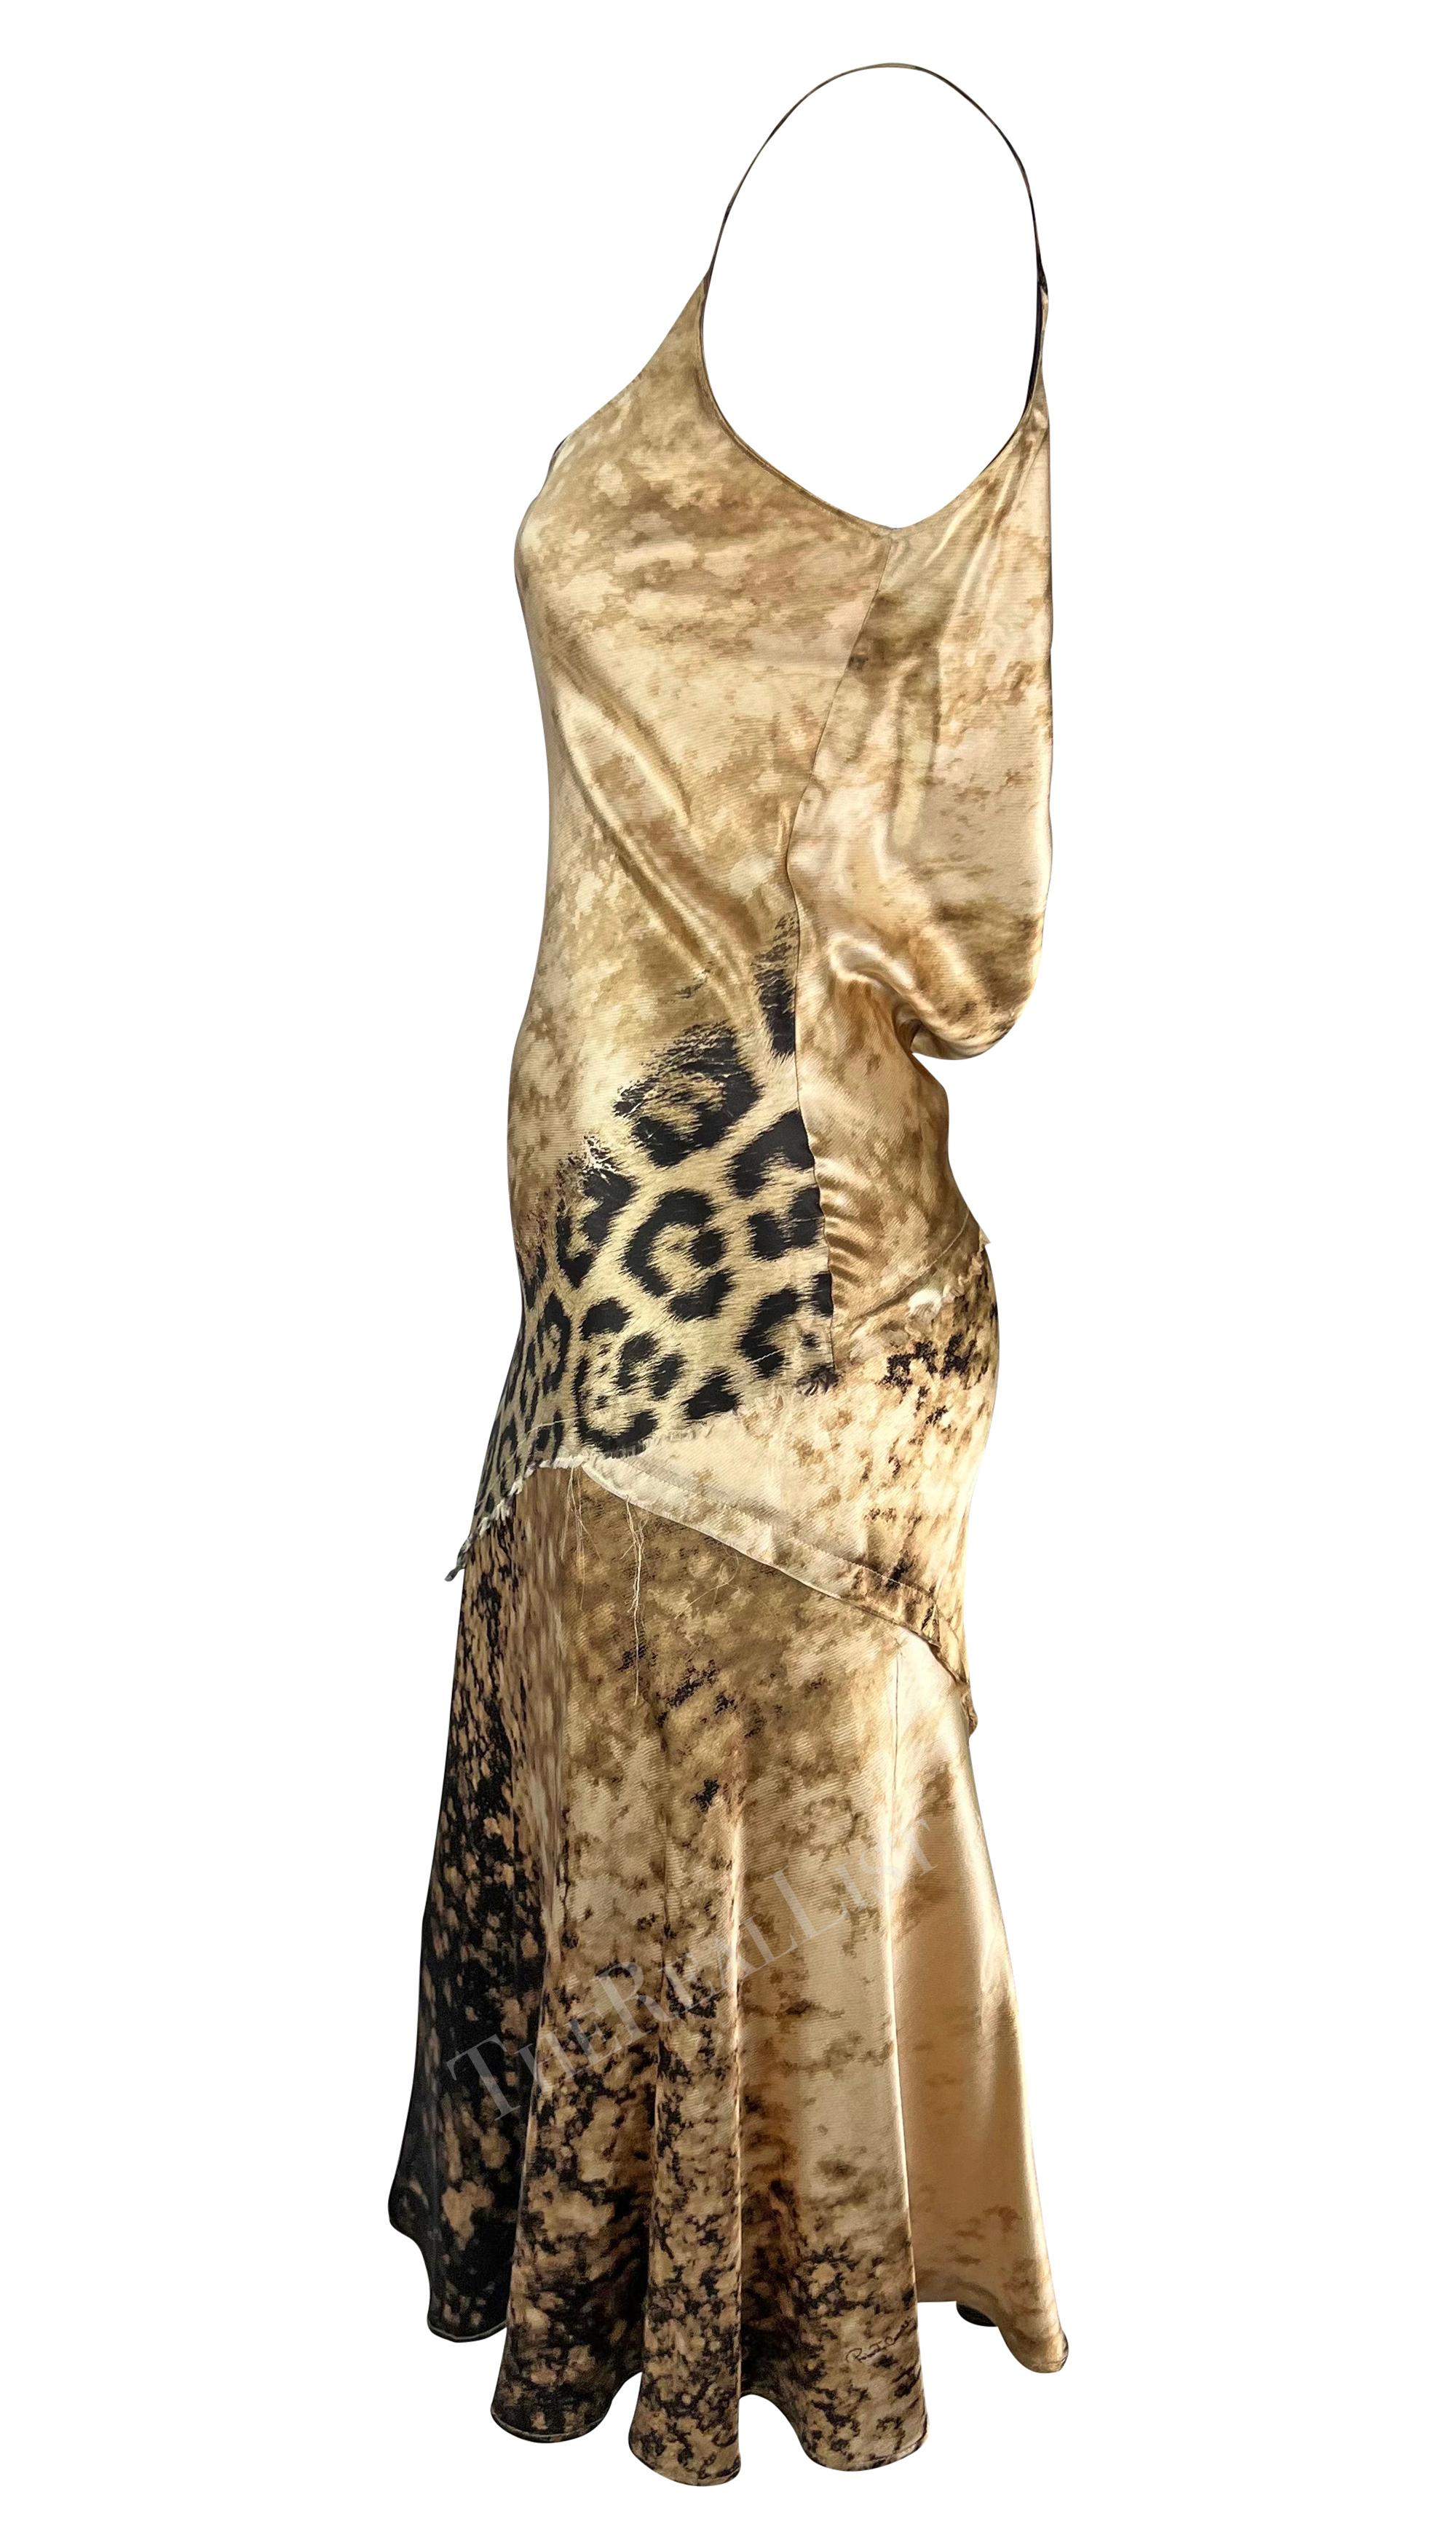 Voici une superbe robe en soie beige de Roberto Cavalli. Datant du début des années 2000, cette magnifique robe est recouverte d'un imprimé abstrait et léopard. La robe présente une encolure dégagée, des bretelles spaghetti, un ourlet évasé et un